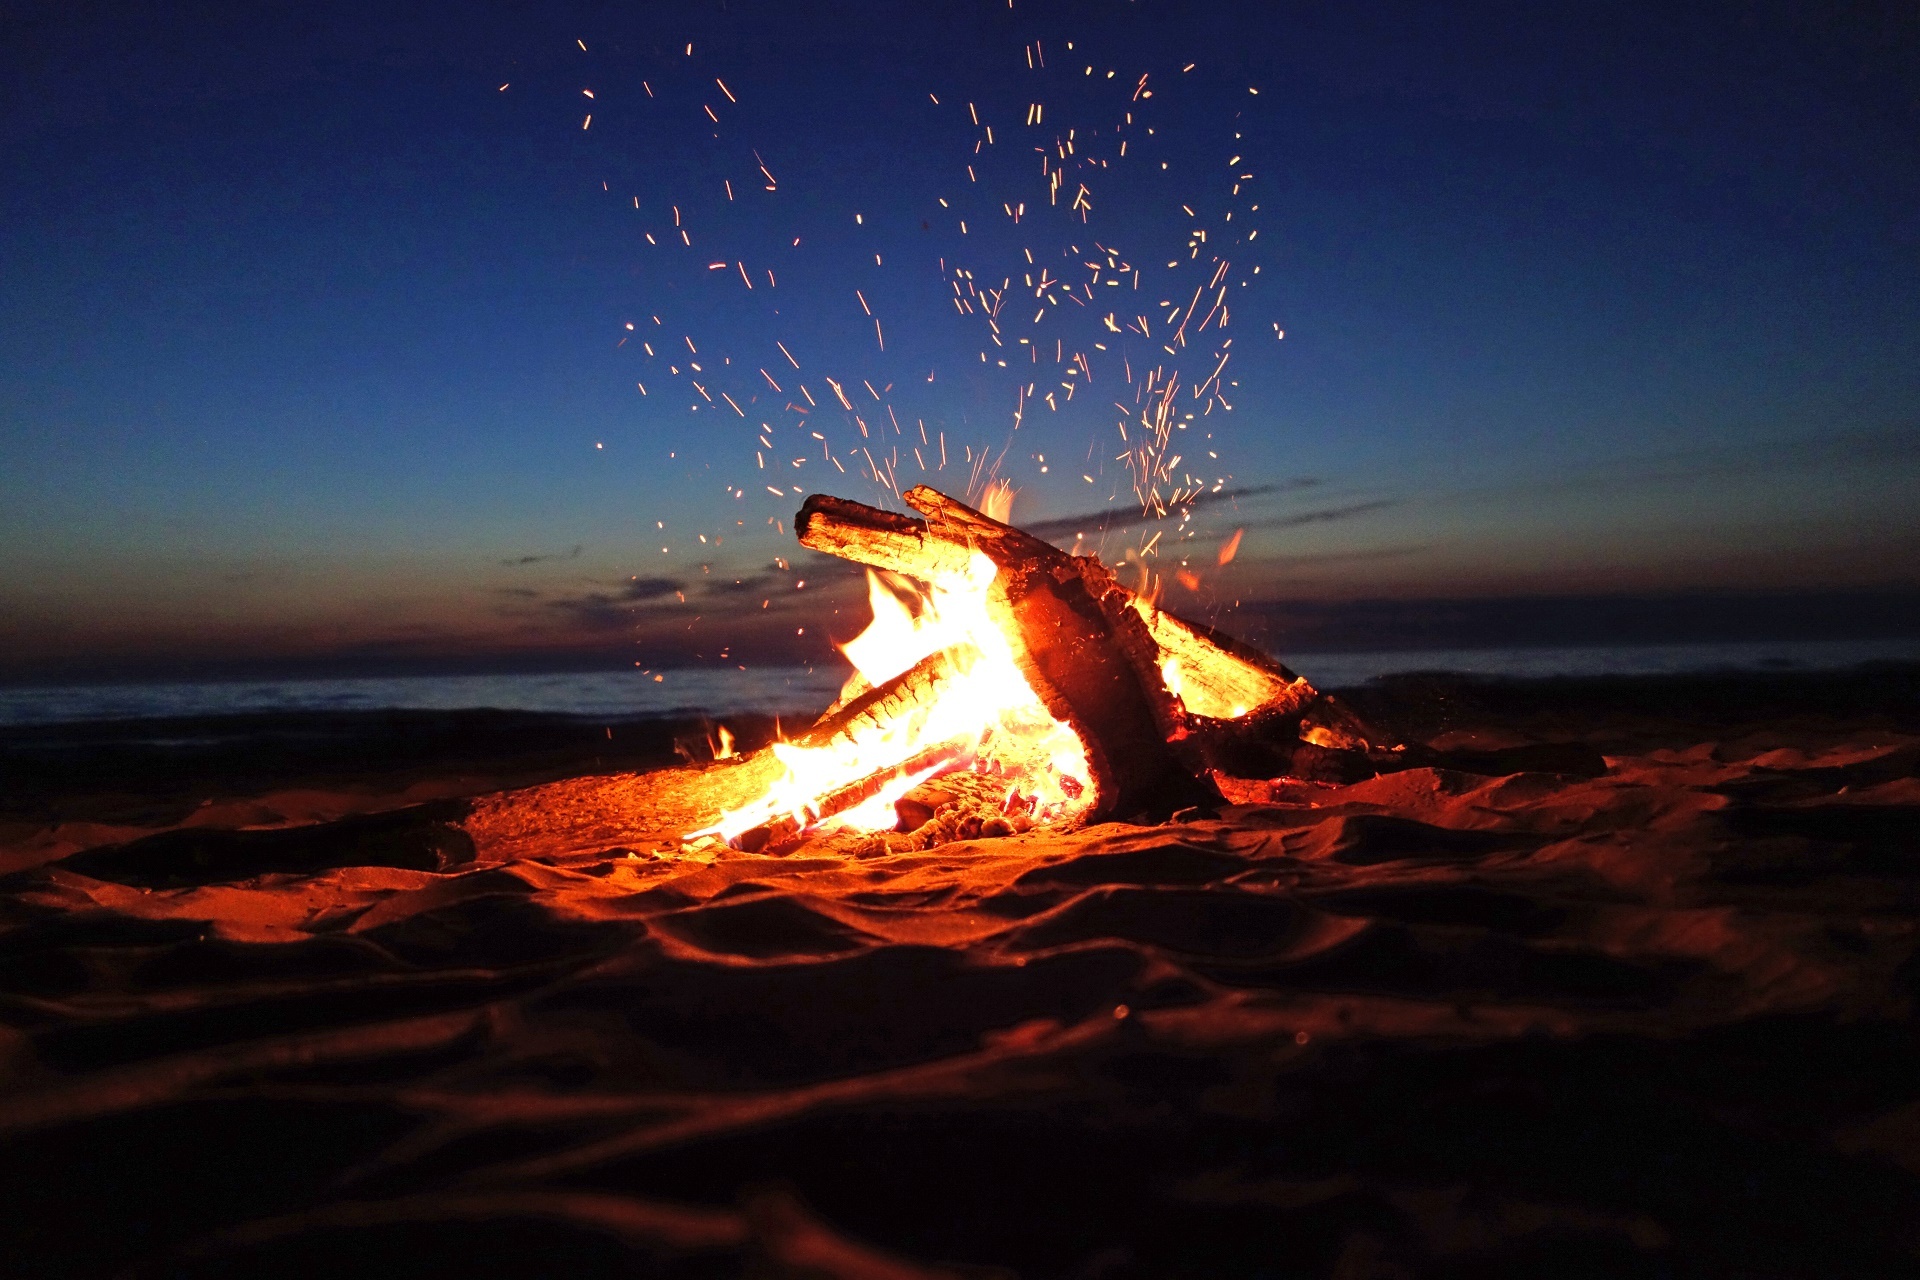 Campfire moments, HD campfire wallpapers, Bonfire evenings, Woodsy fire scenes, Cozy campfire visuals, 1920x1280 HD Desktop